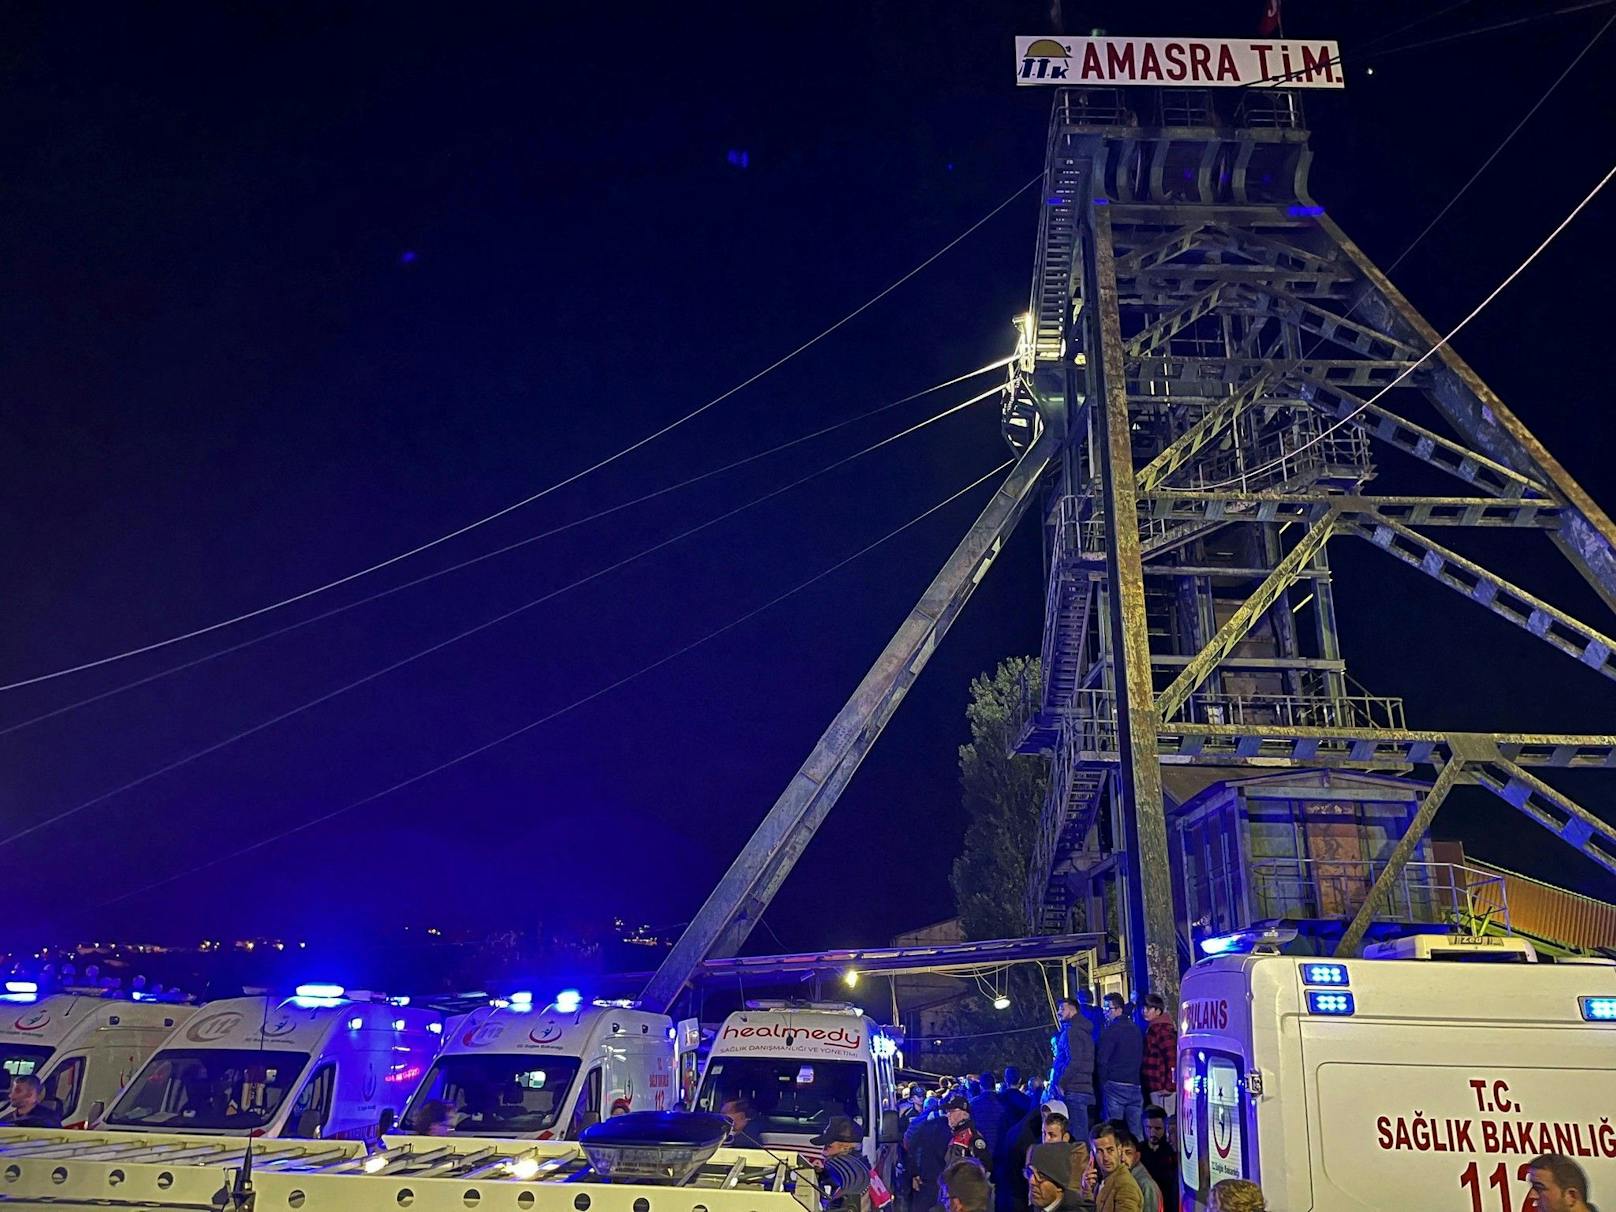 In der Hafenstadt Amasra hat sich am Freitagabend ein schweres Minenunglück ereignet.